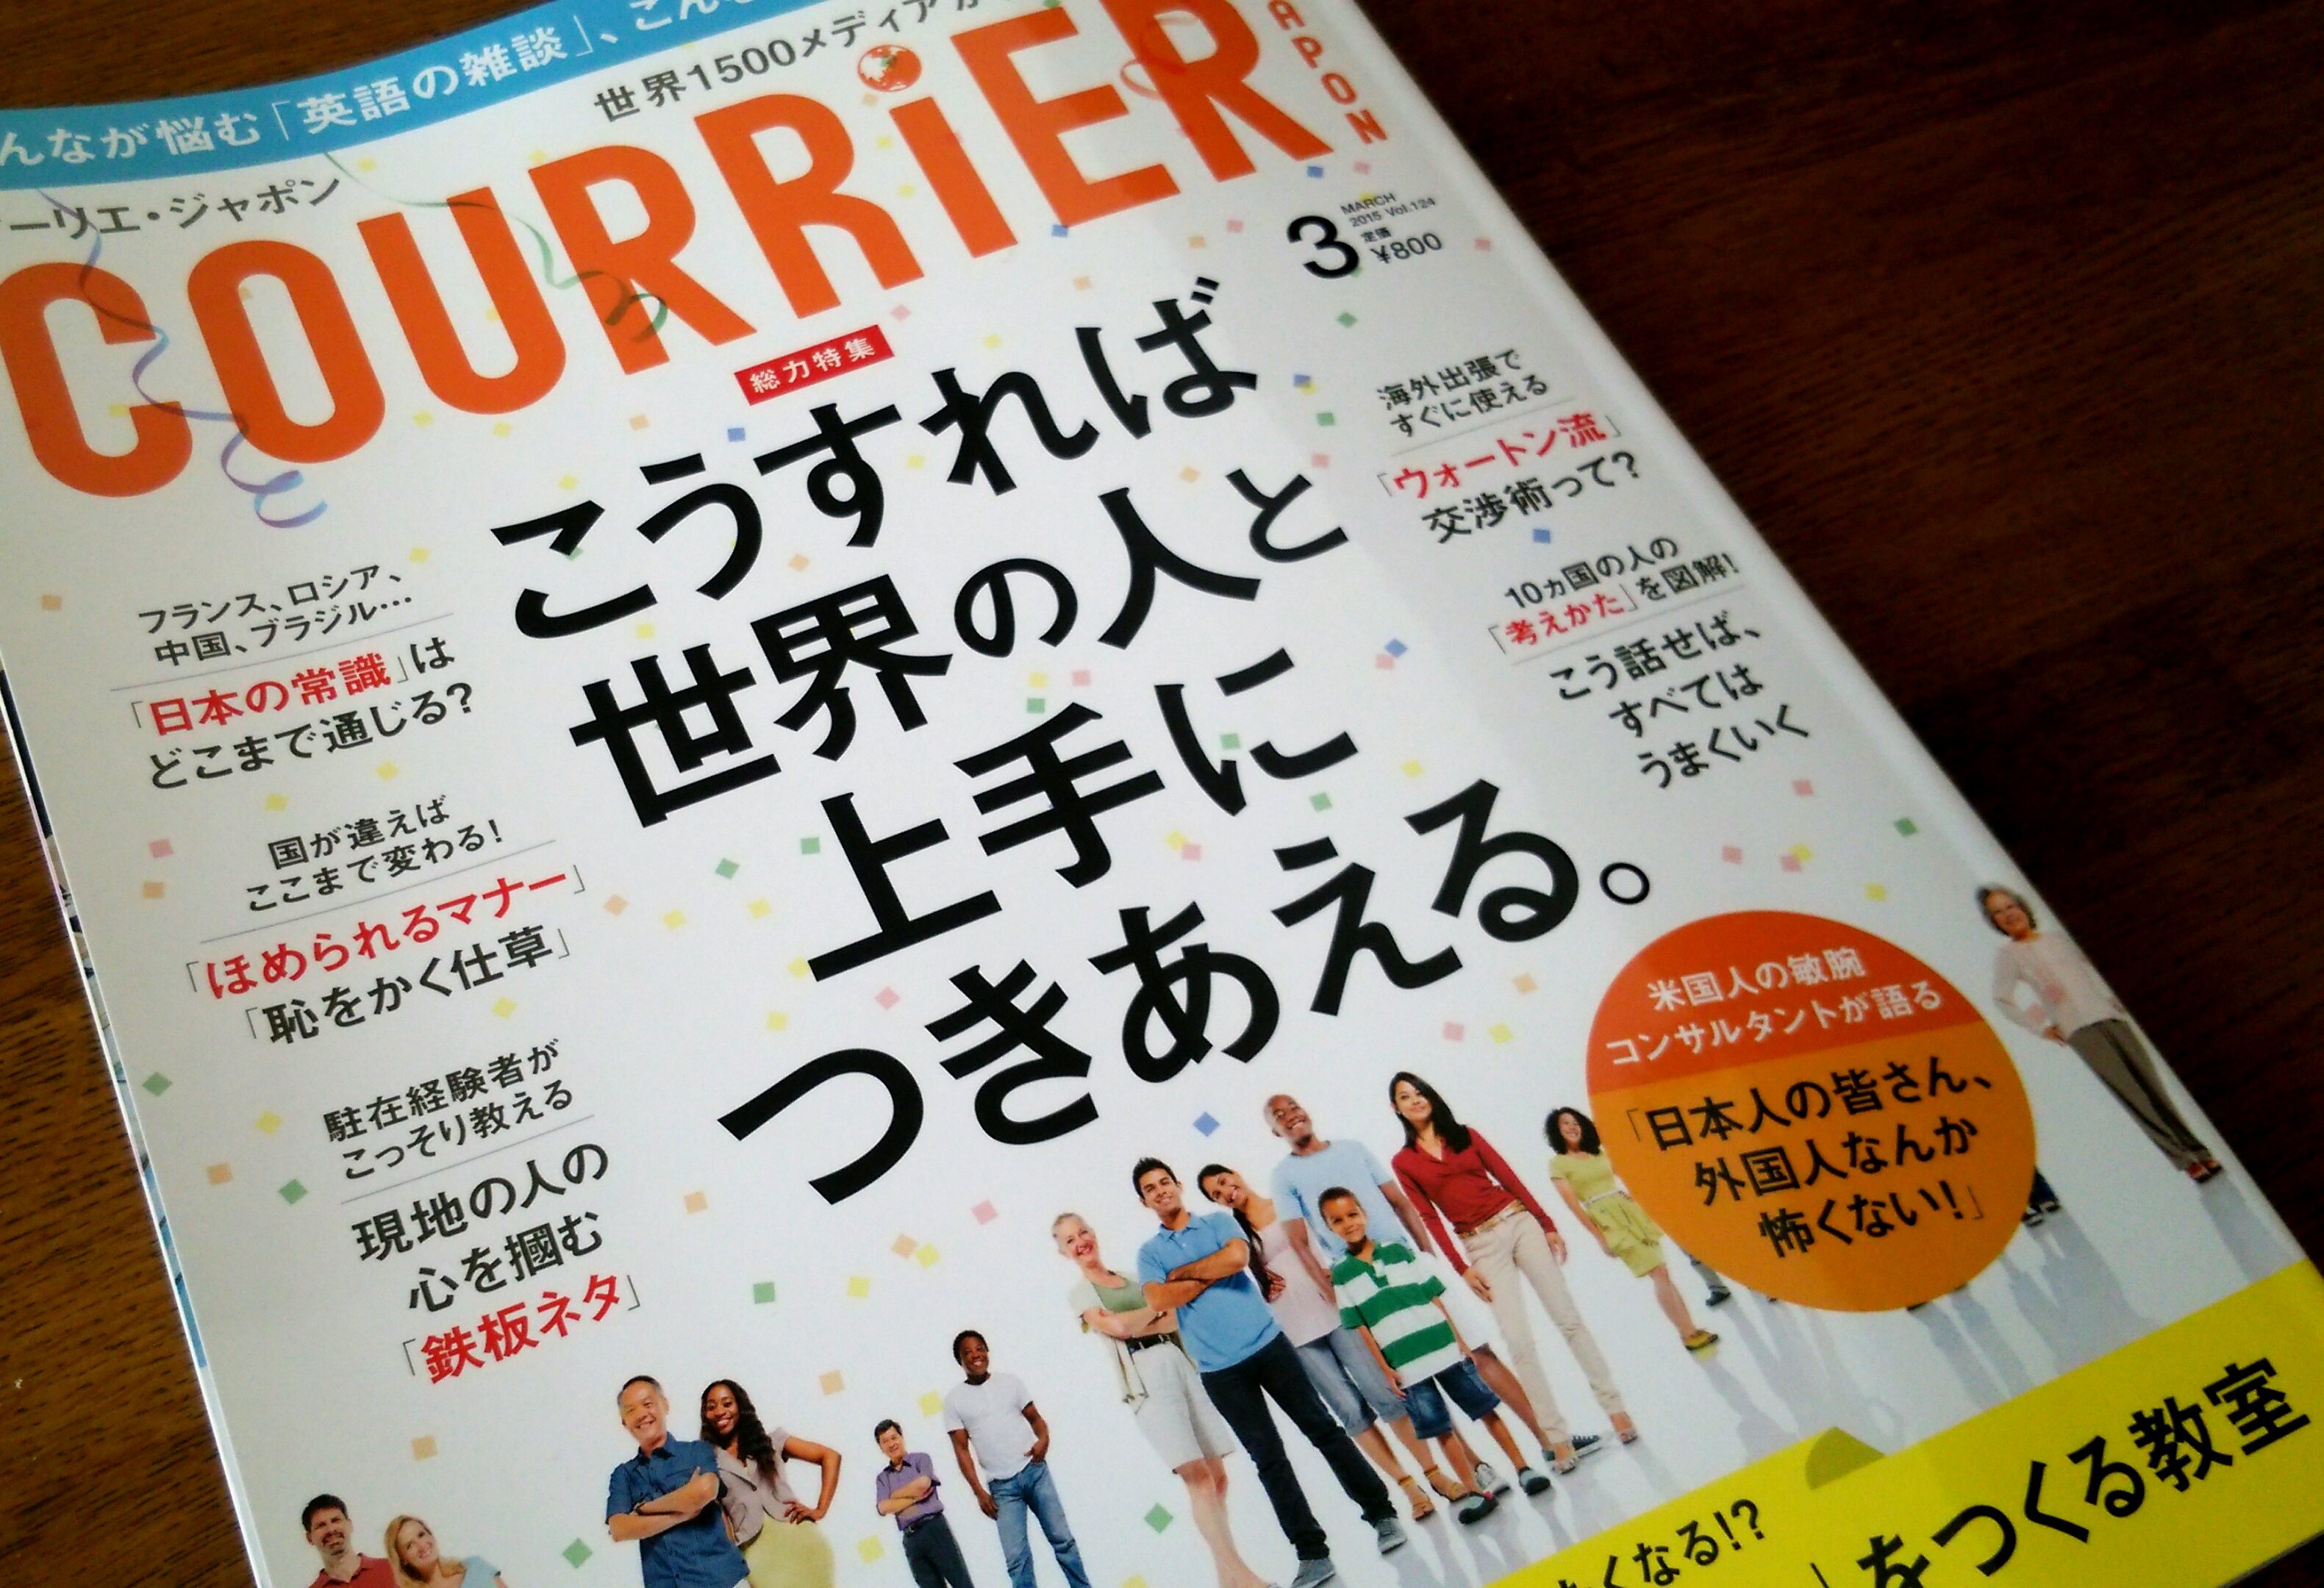 【読了】COURRiER JAPON(クーリエ ジャポン) vol.124 MARCH 2015